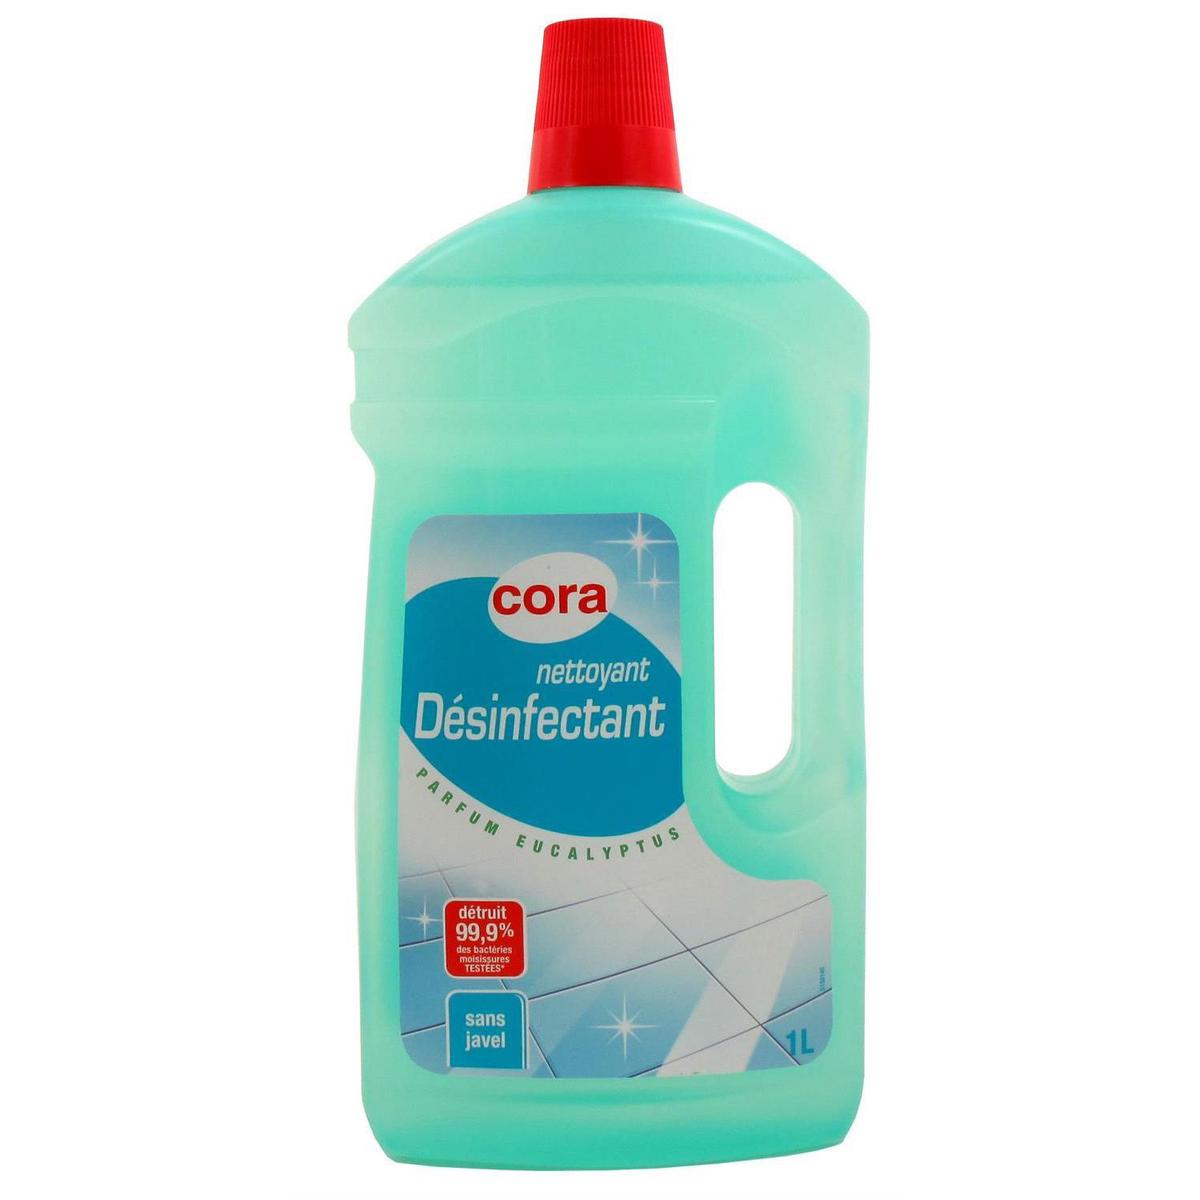 Promotion Cora Liquide de rinçage pour lave vaisselle, Lot de 2 x 1L